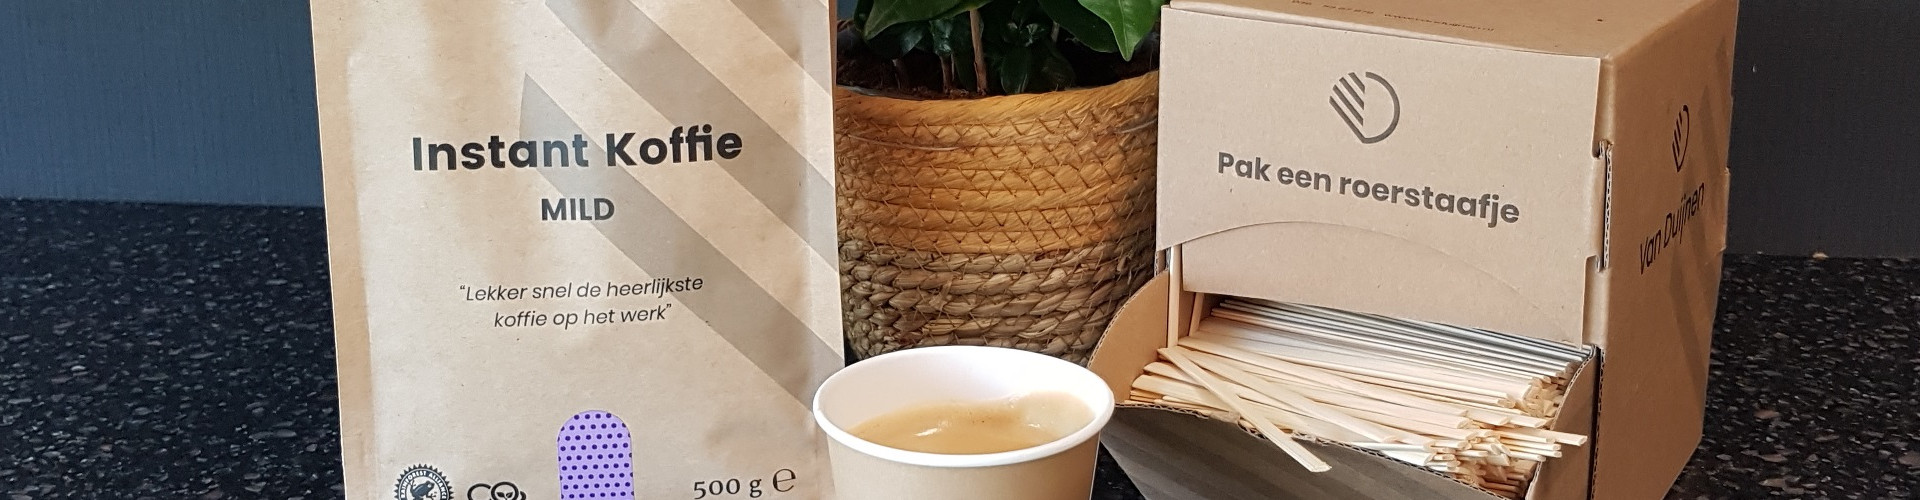 Van Duijnen instant koffie mild in zak 500 gram en doos roerstaafjes bamboe en recyclebare koffiebeker